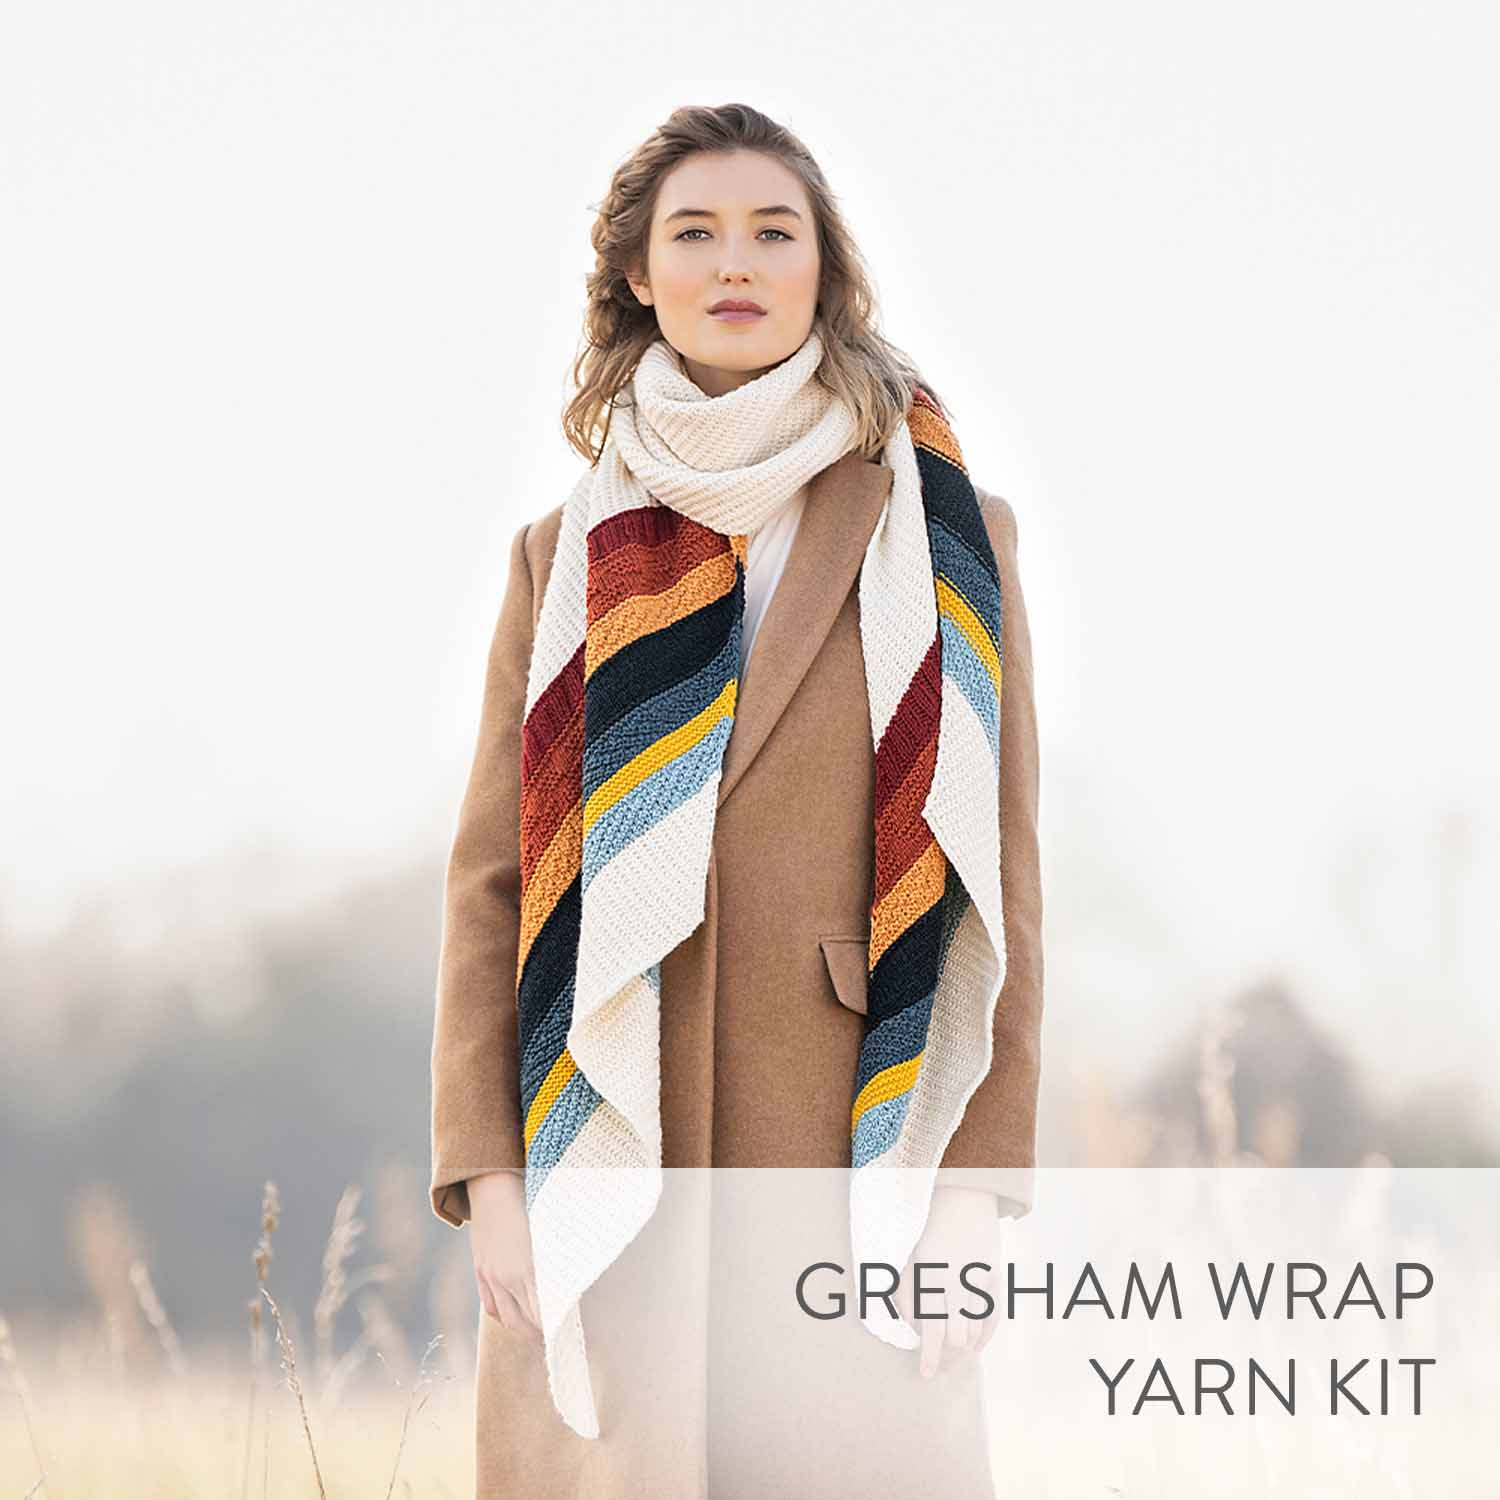 Gresham Wrap Yarn Kit